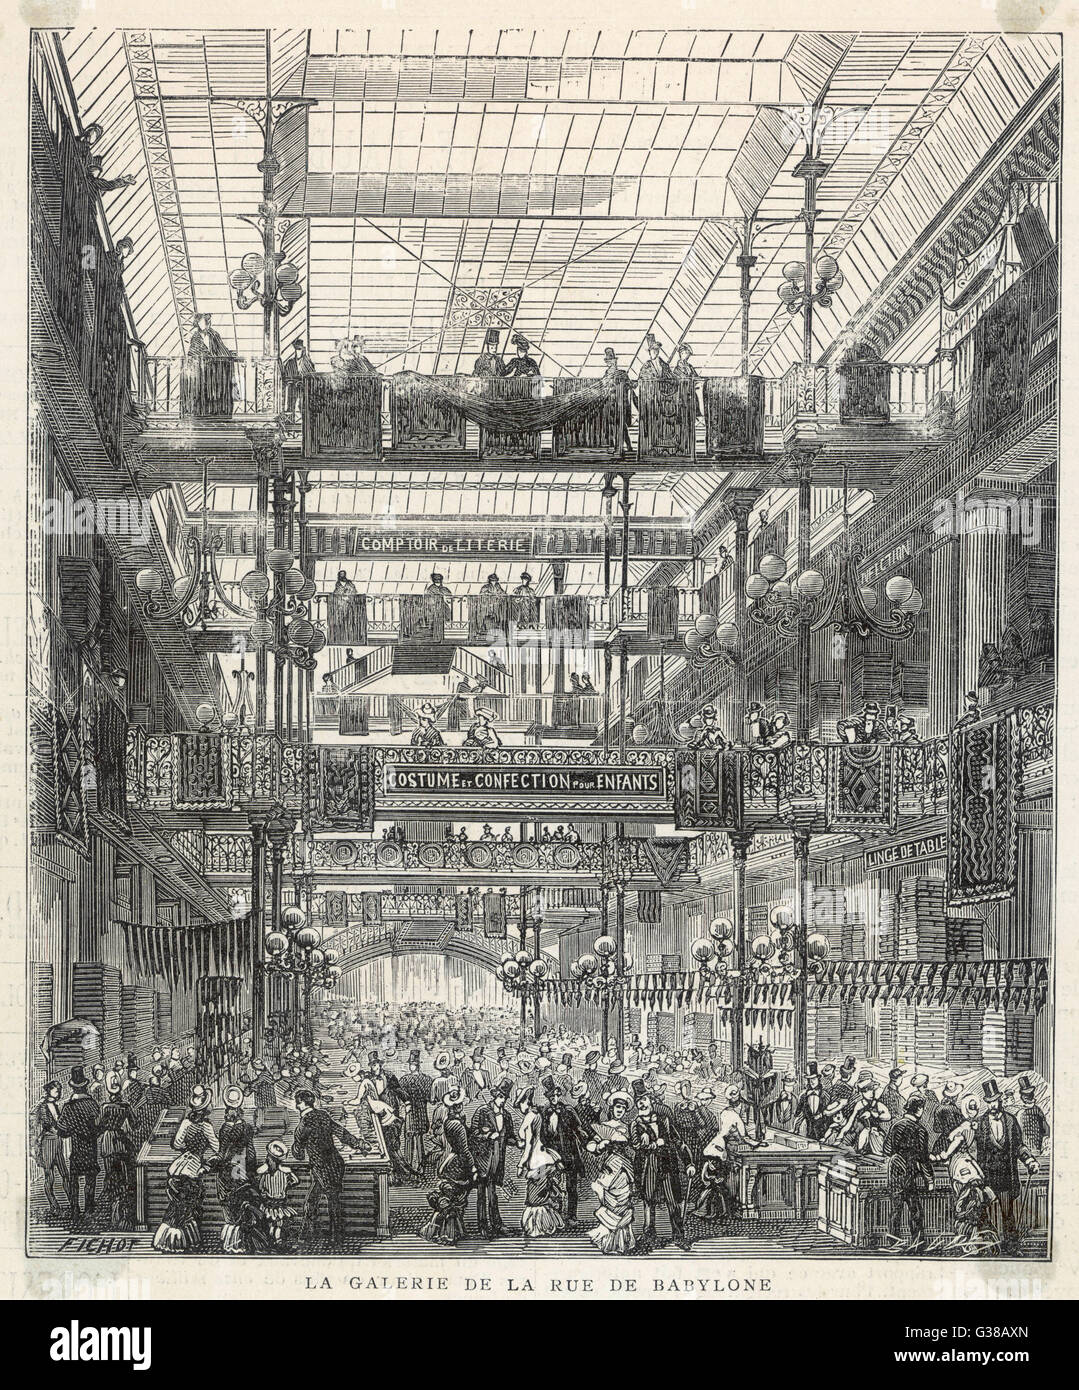 Department Store di Parigi, Francia. La Galerie de la rue de Babylone. Data: 1880 Foto Stock